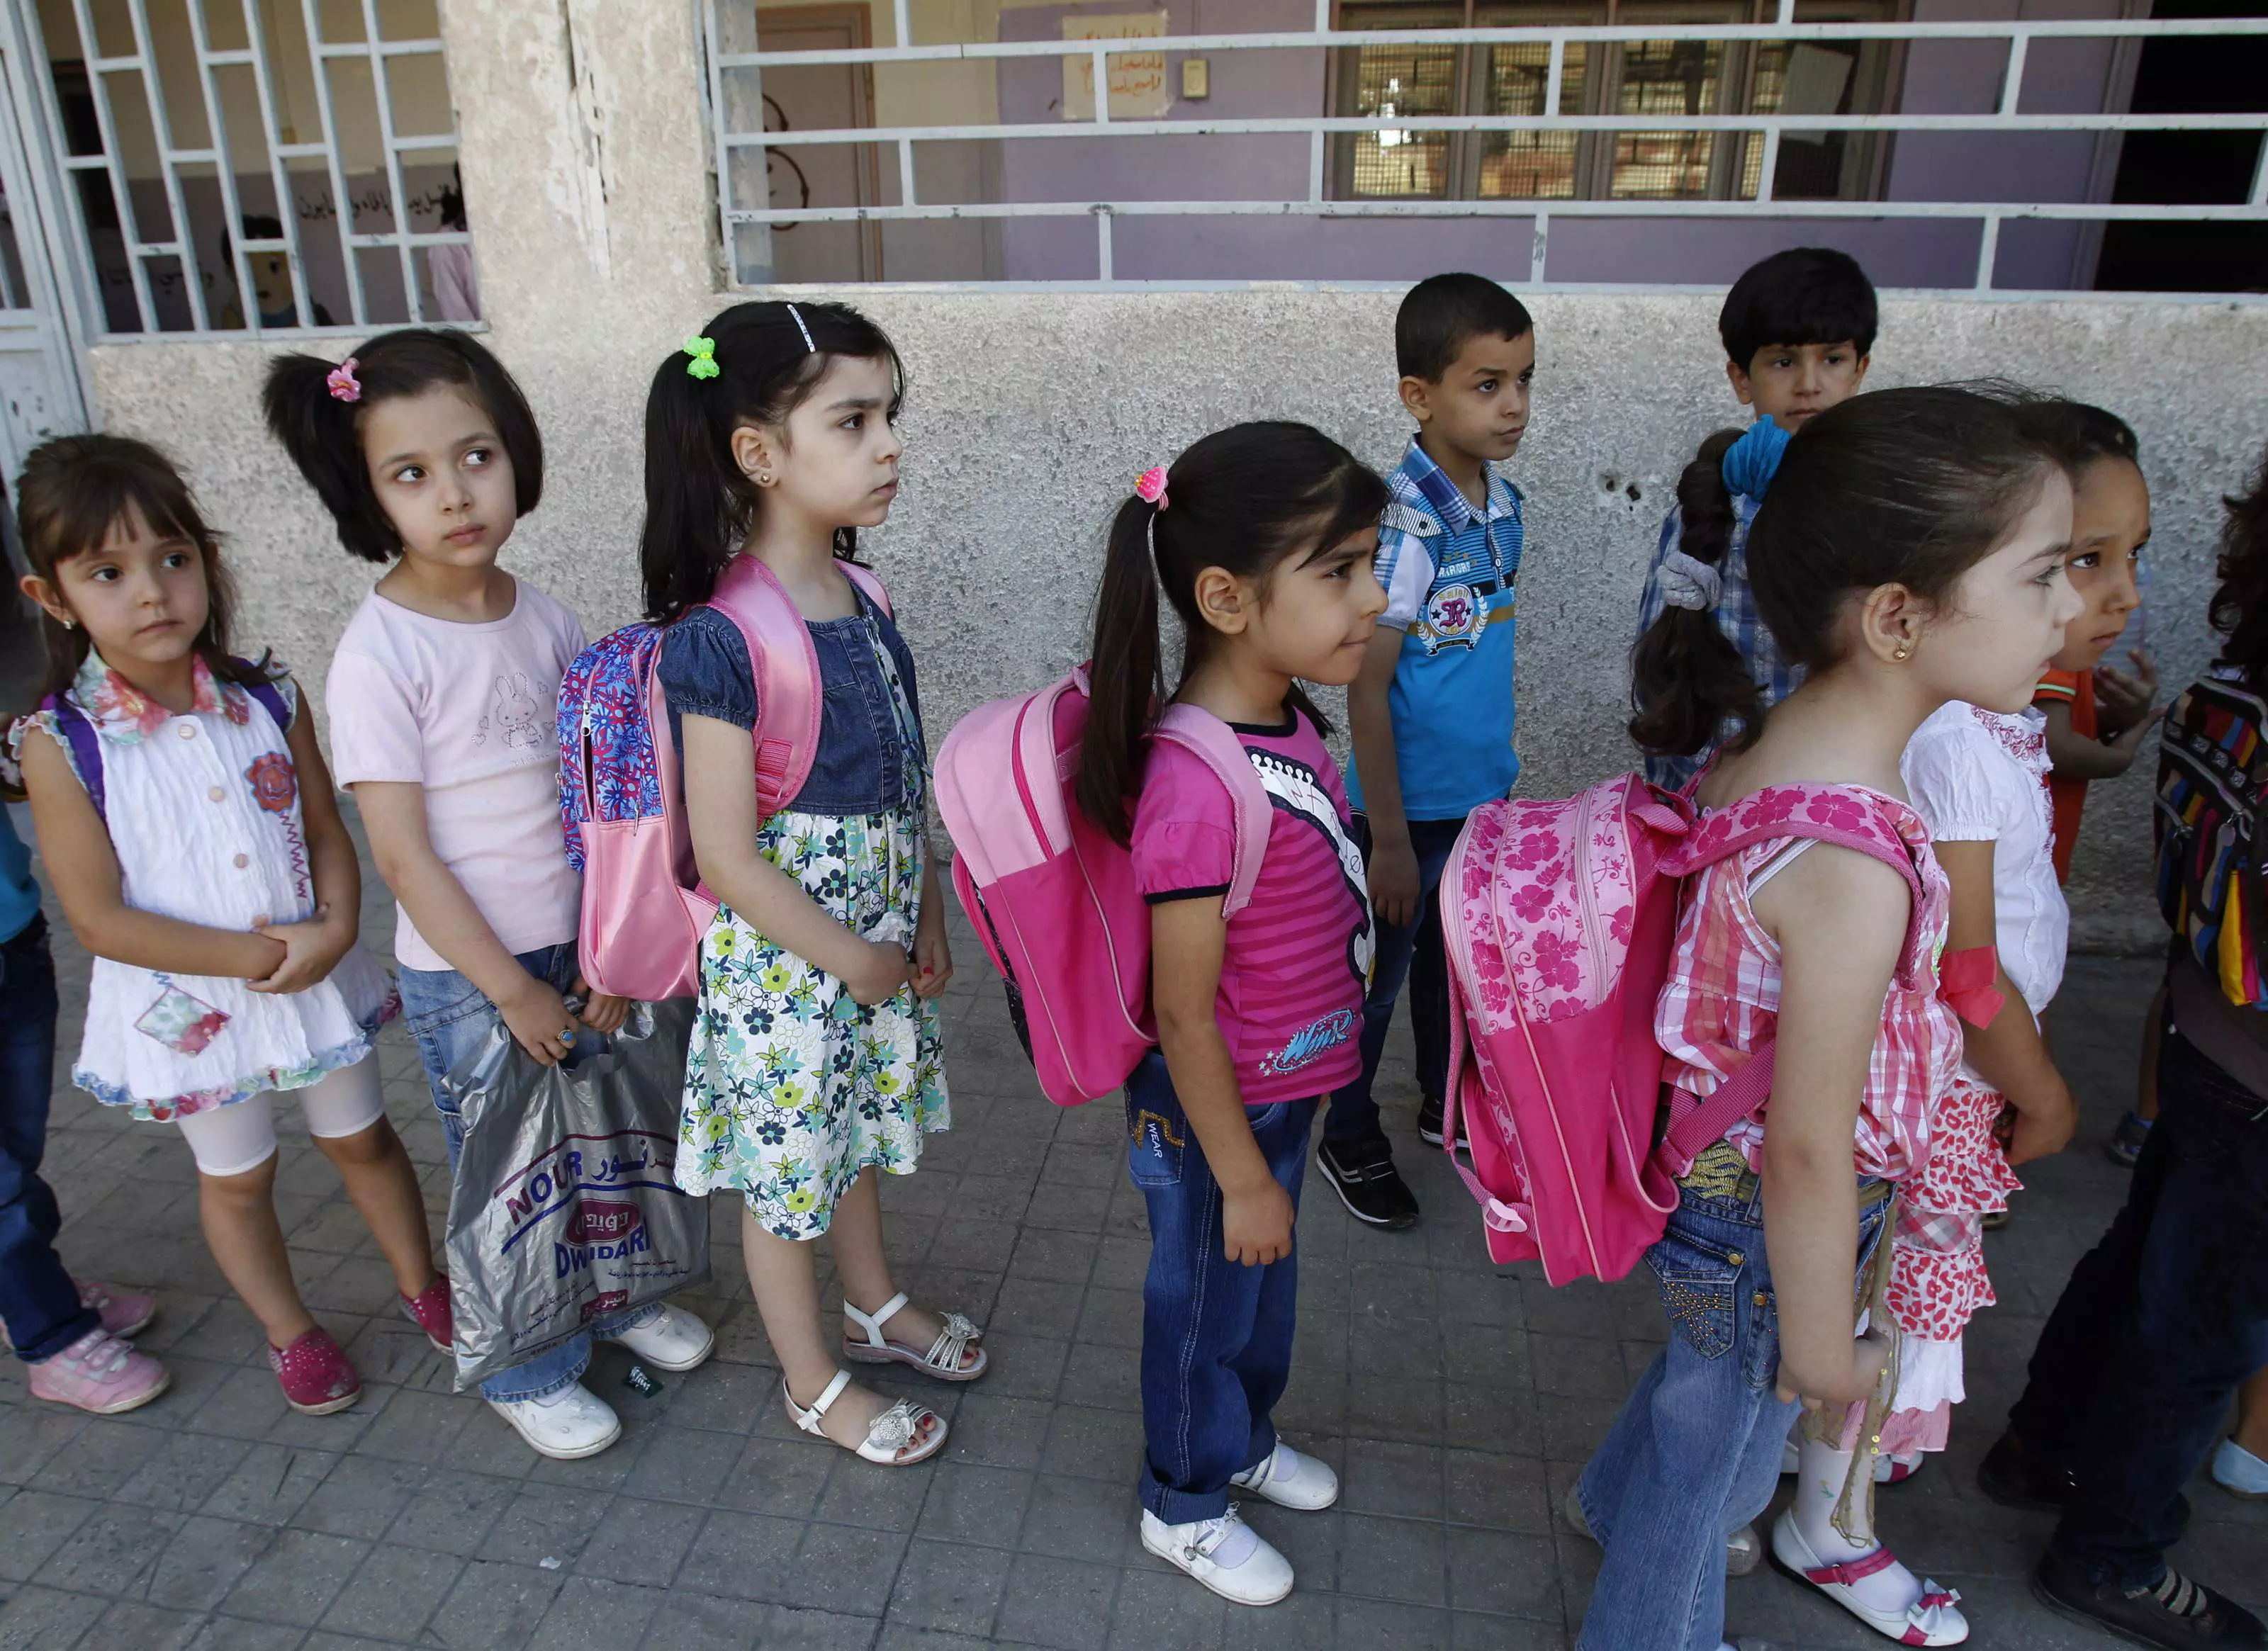 תלמידים בבית ספר בדמשק, השבוע